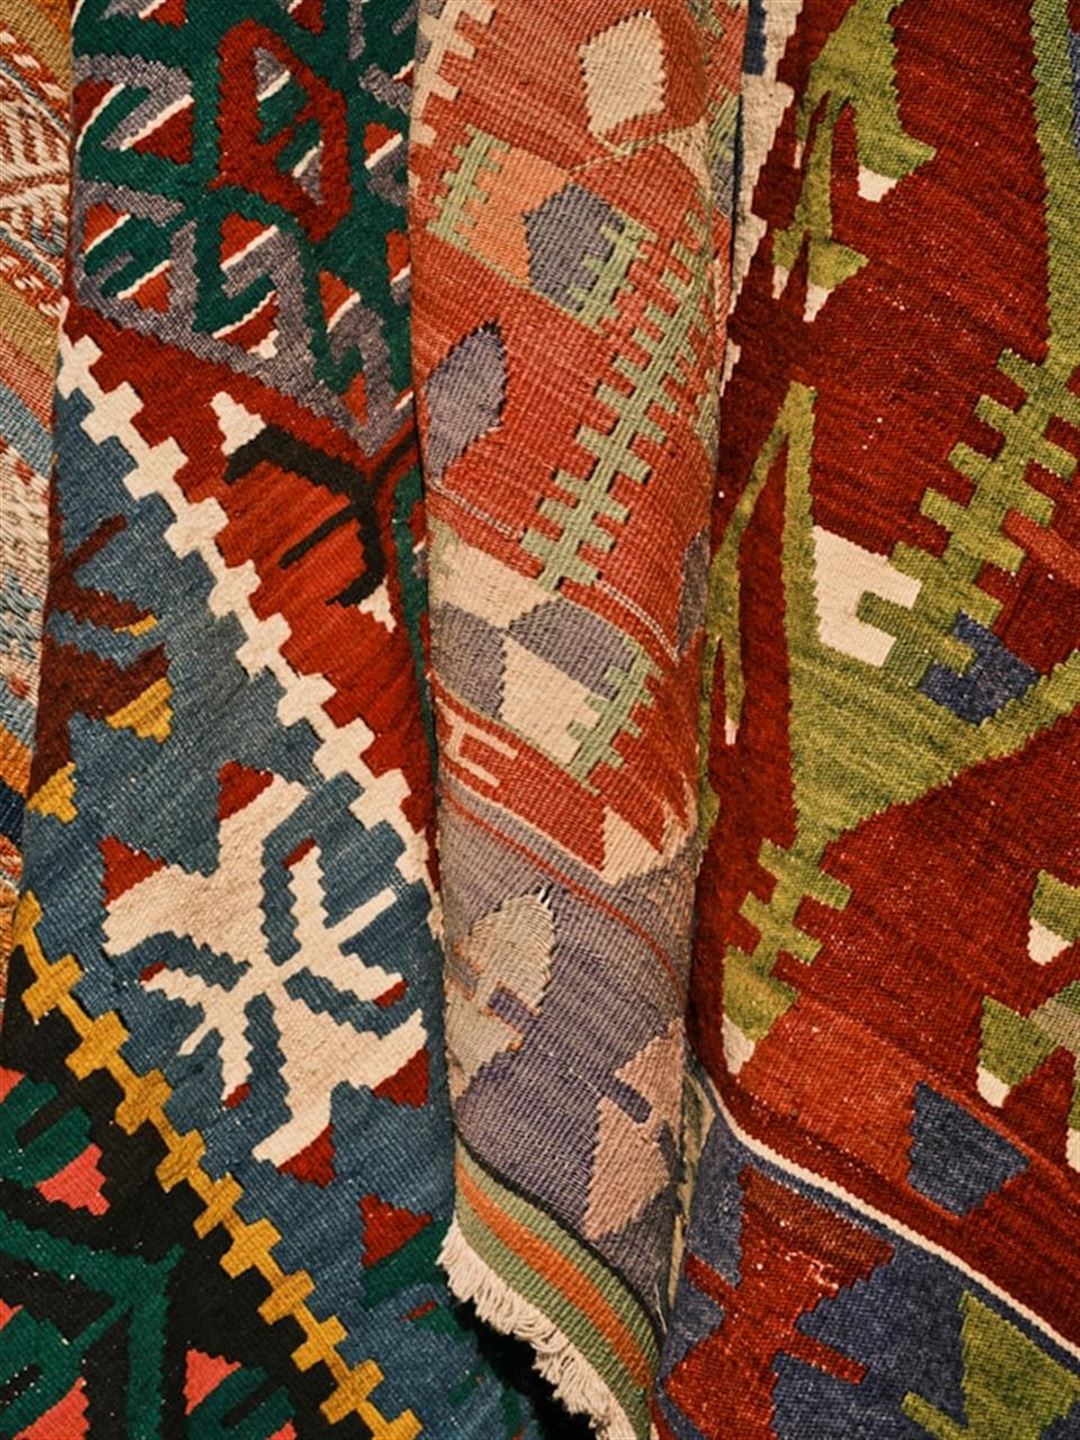 Marokkanske tæpper: Kulturens vævede kunstværker